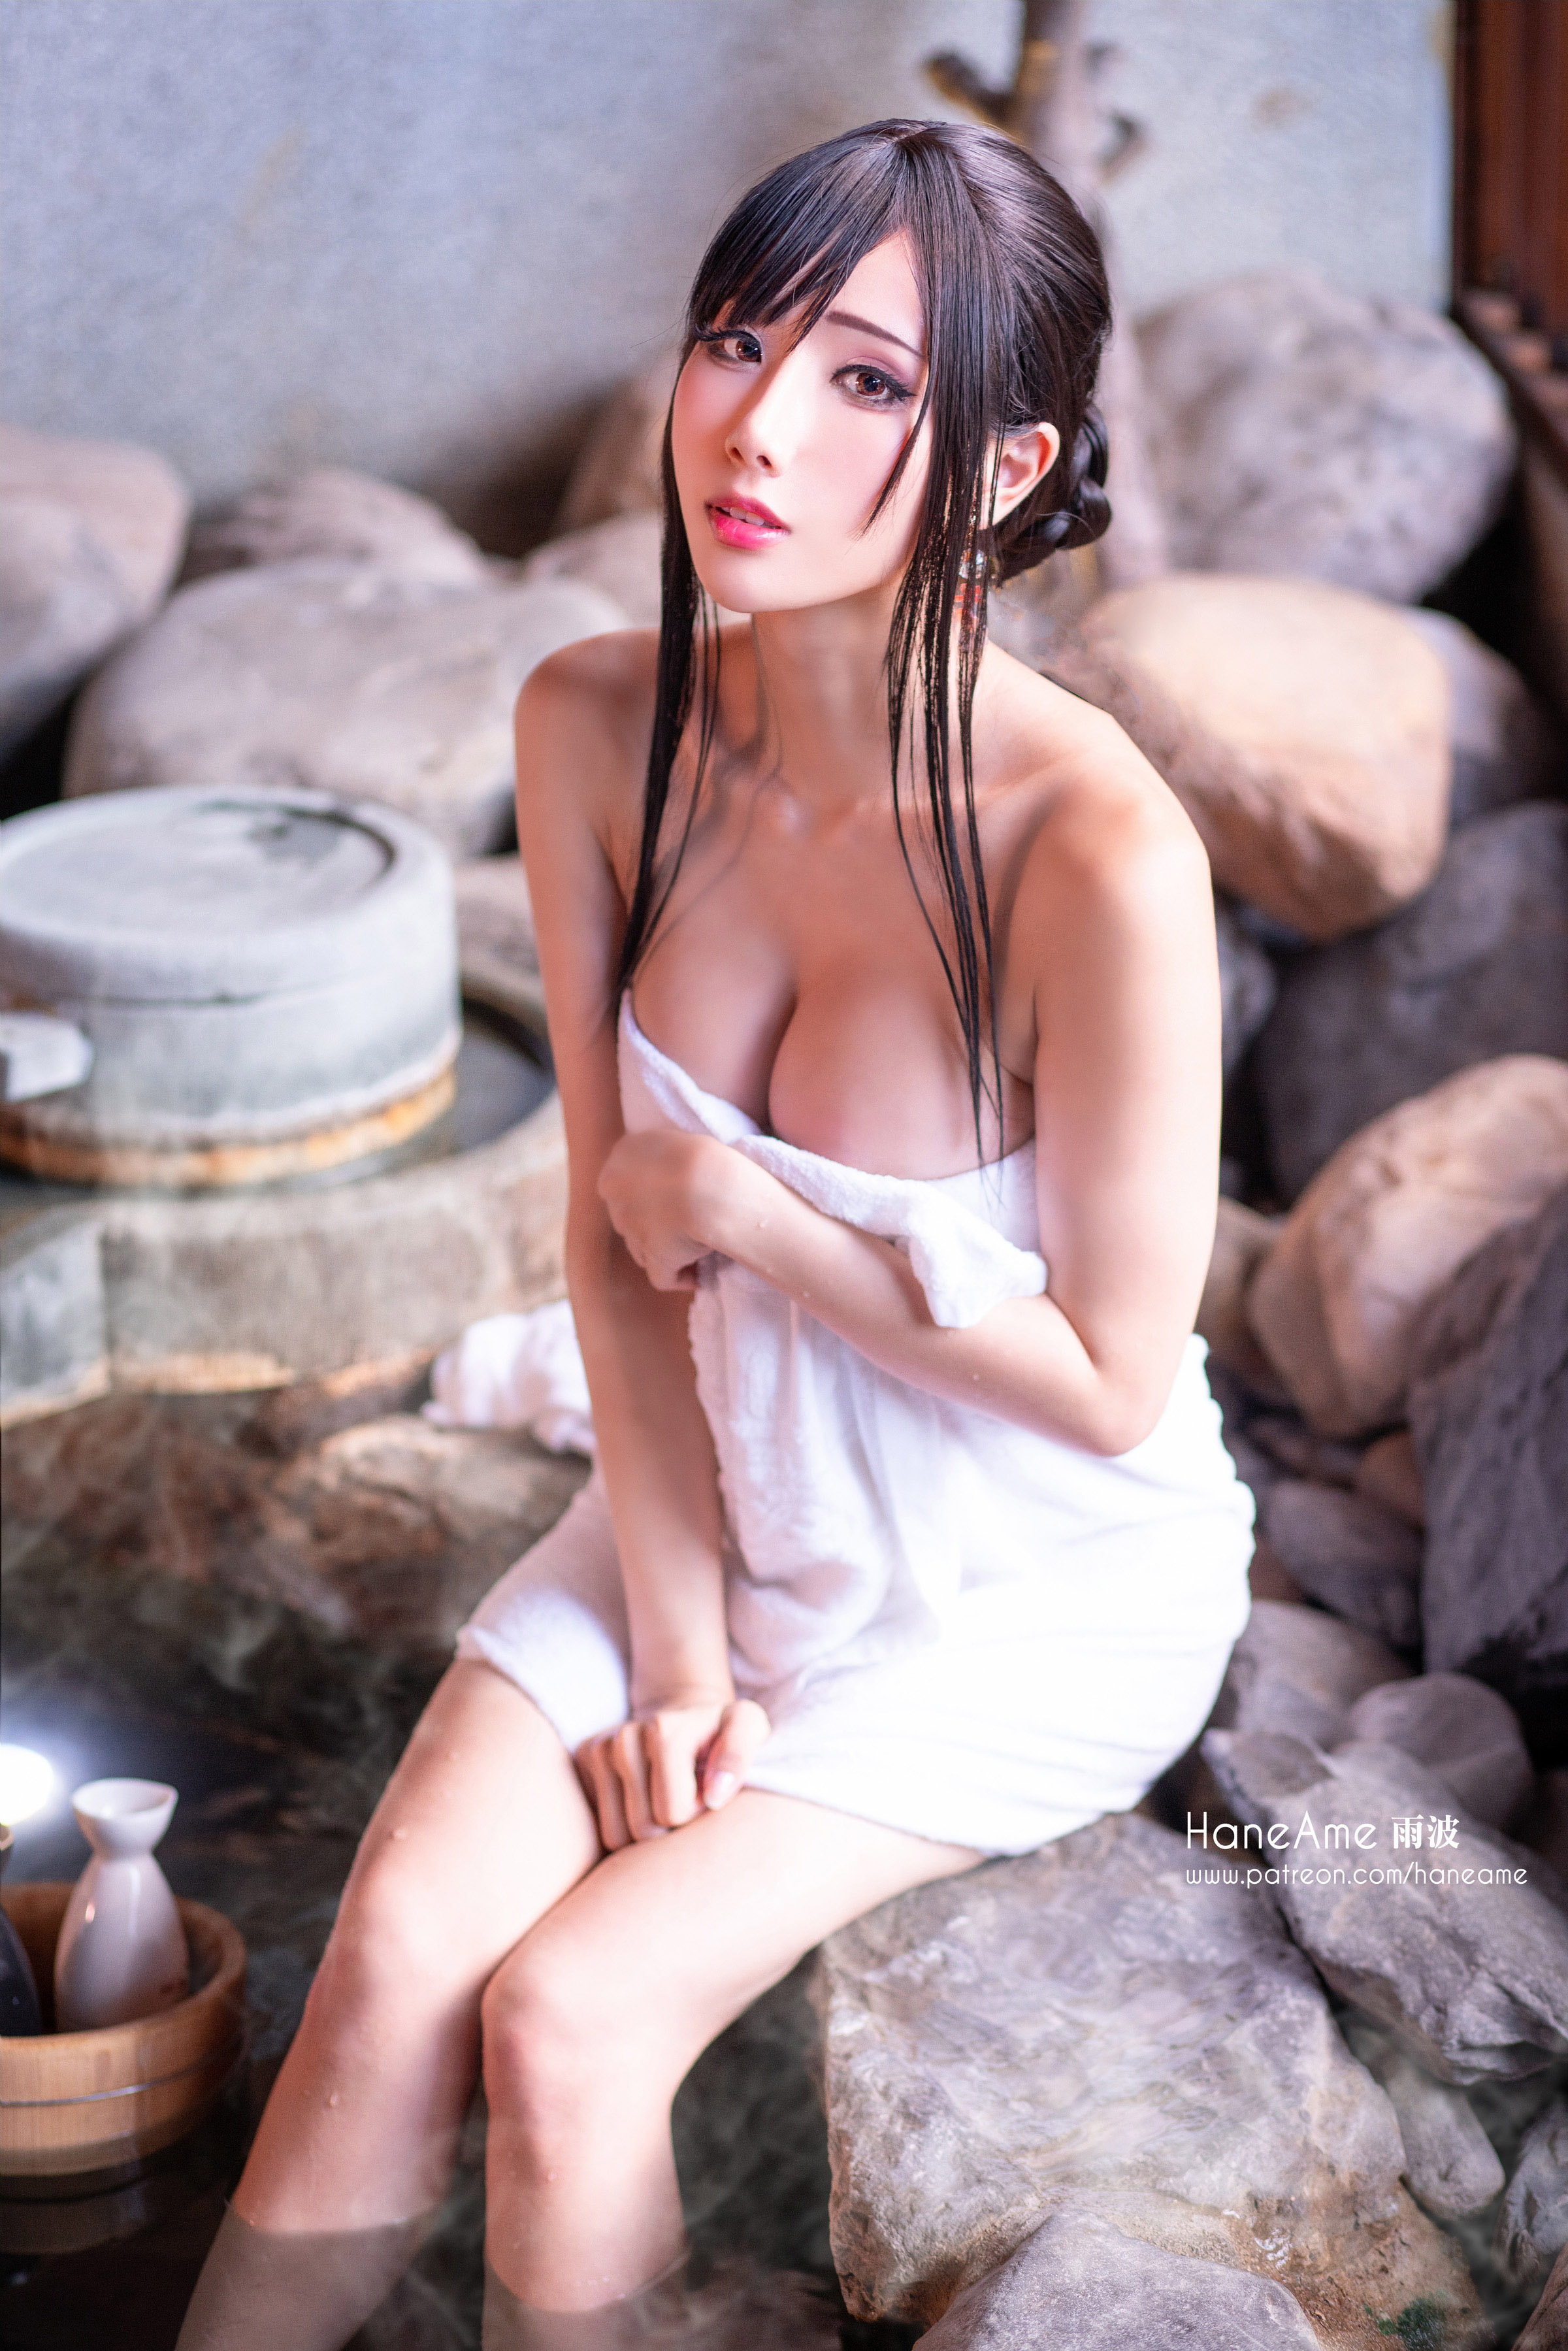 People 2400x3598 women model Asian cosplay Hane Ame hot spring black hair dark hair long hair big boobs cleavage women outdoors looking at viewer vertical